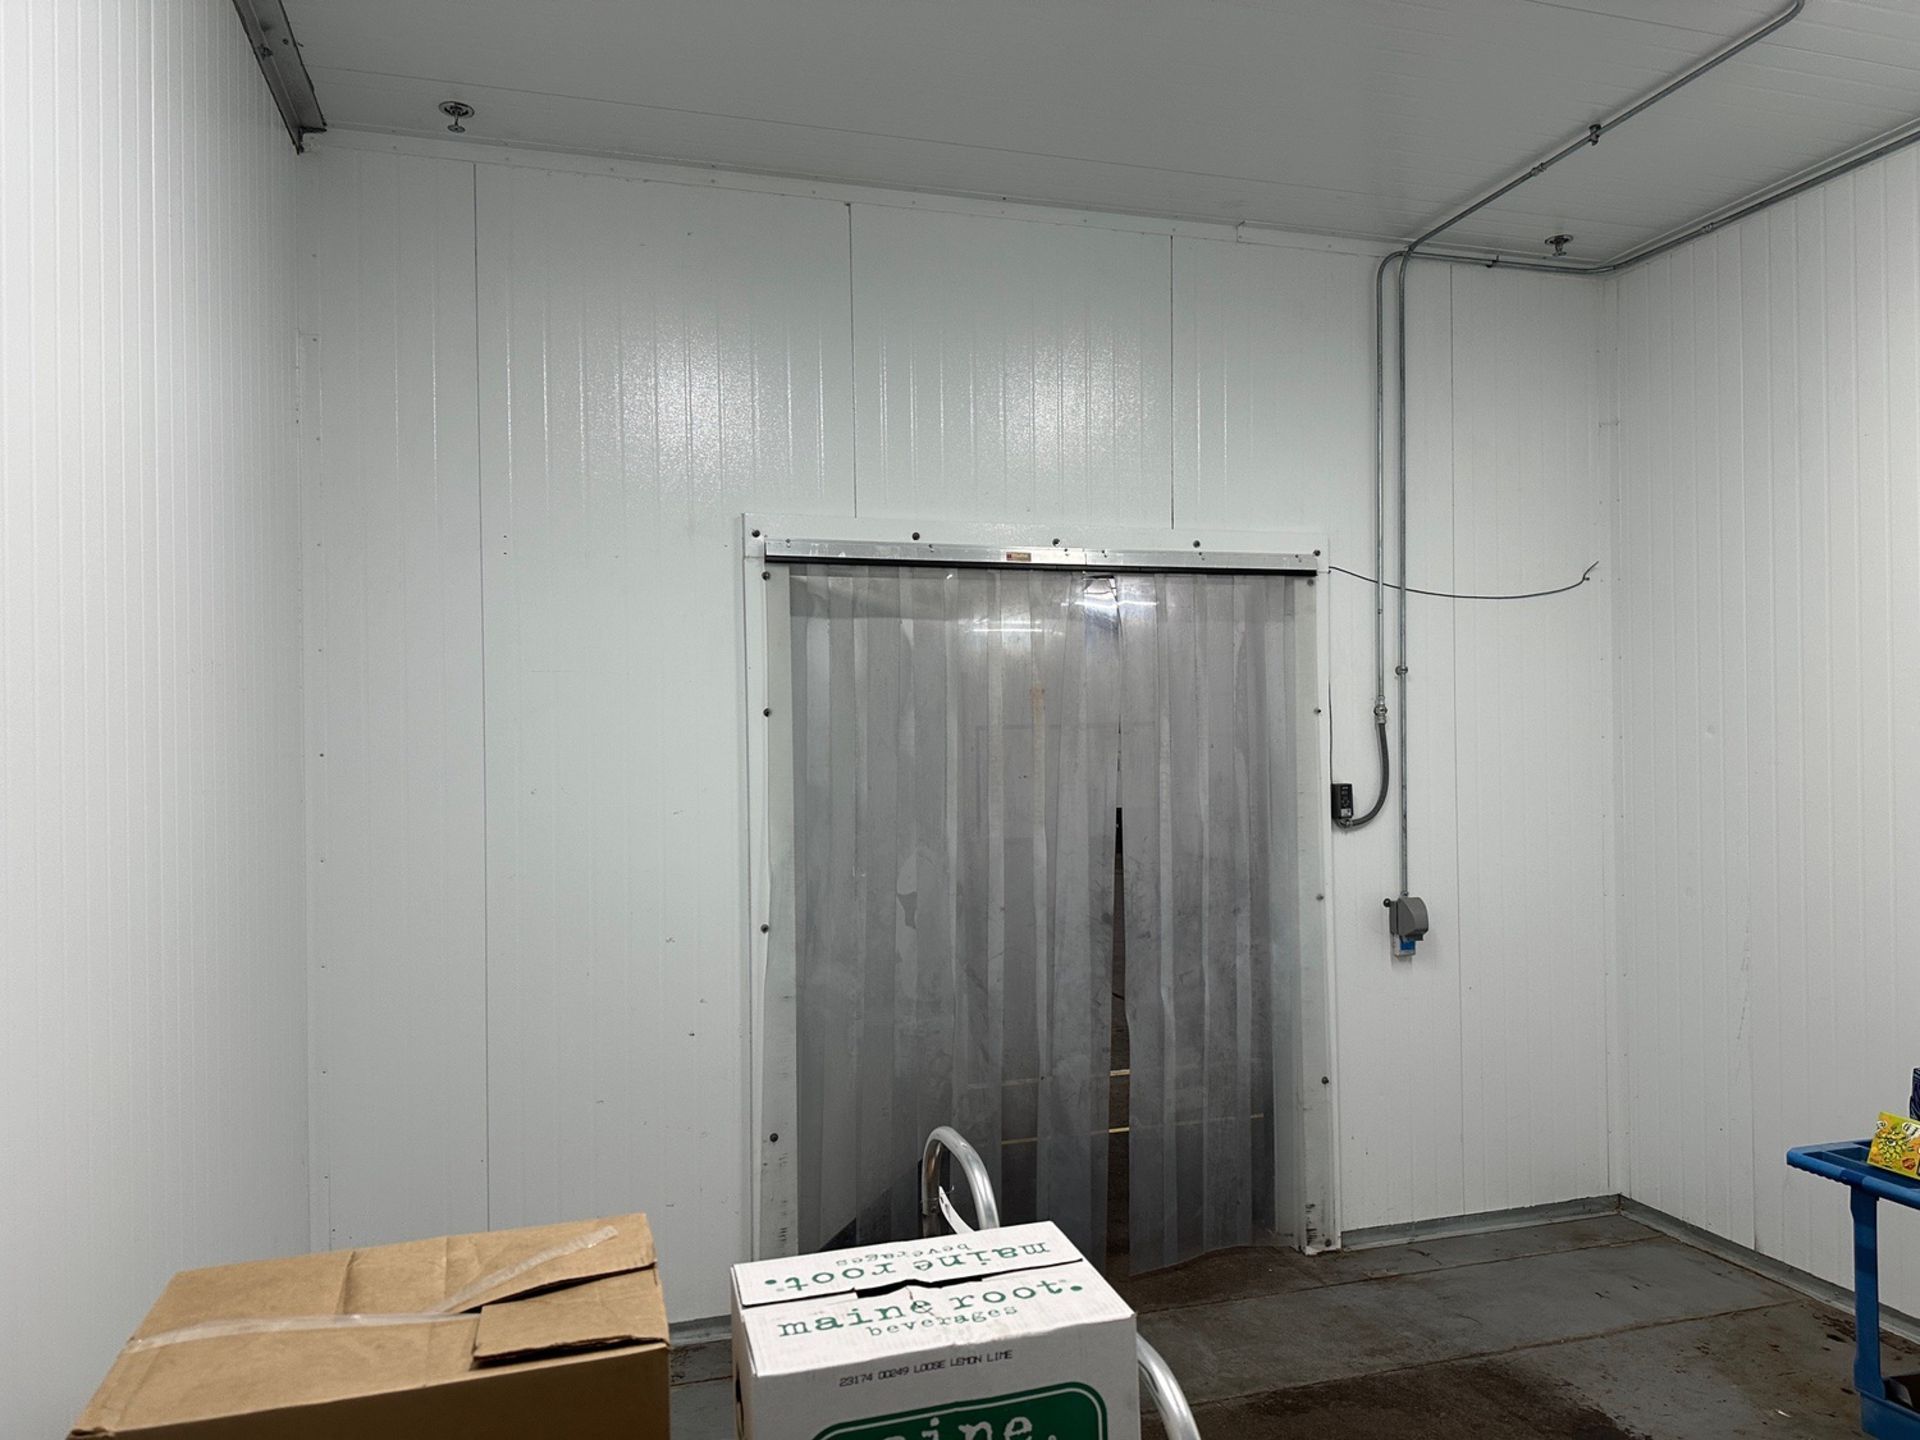 Cold Box Materials - (32) 45" x 12' Panels and Partials - 6' x 8' Door - ( | Rig Fee $Contact Rigger - Image 11 of 12